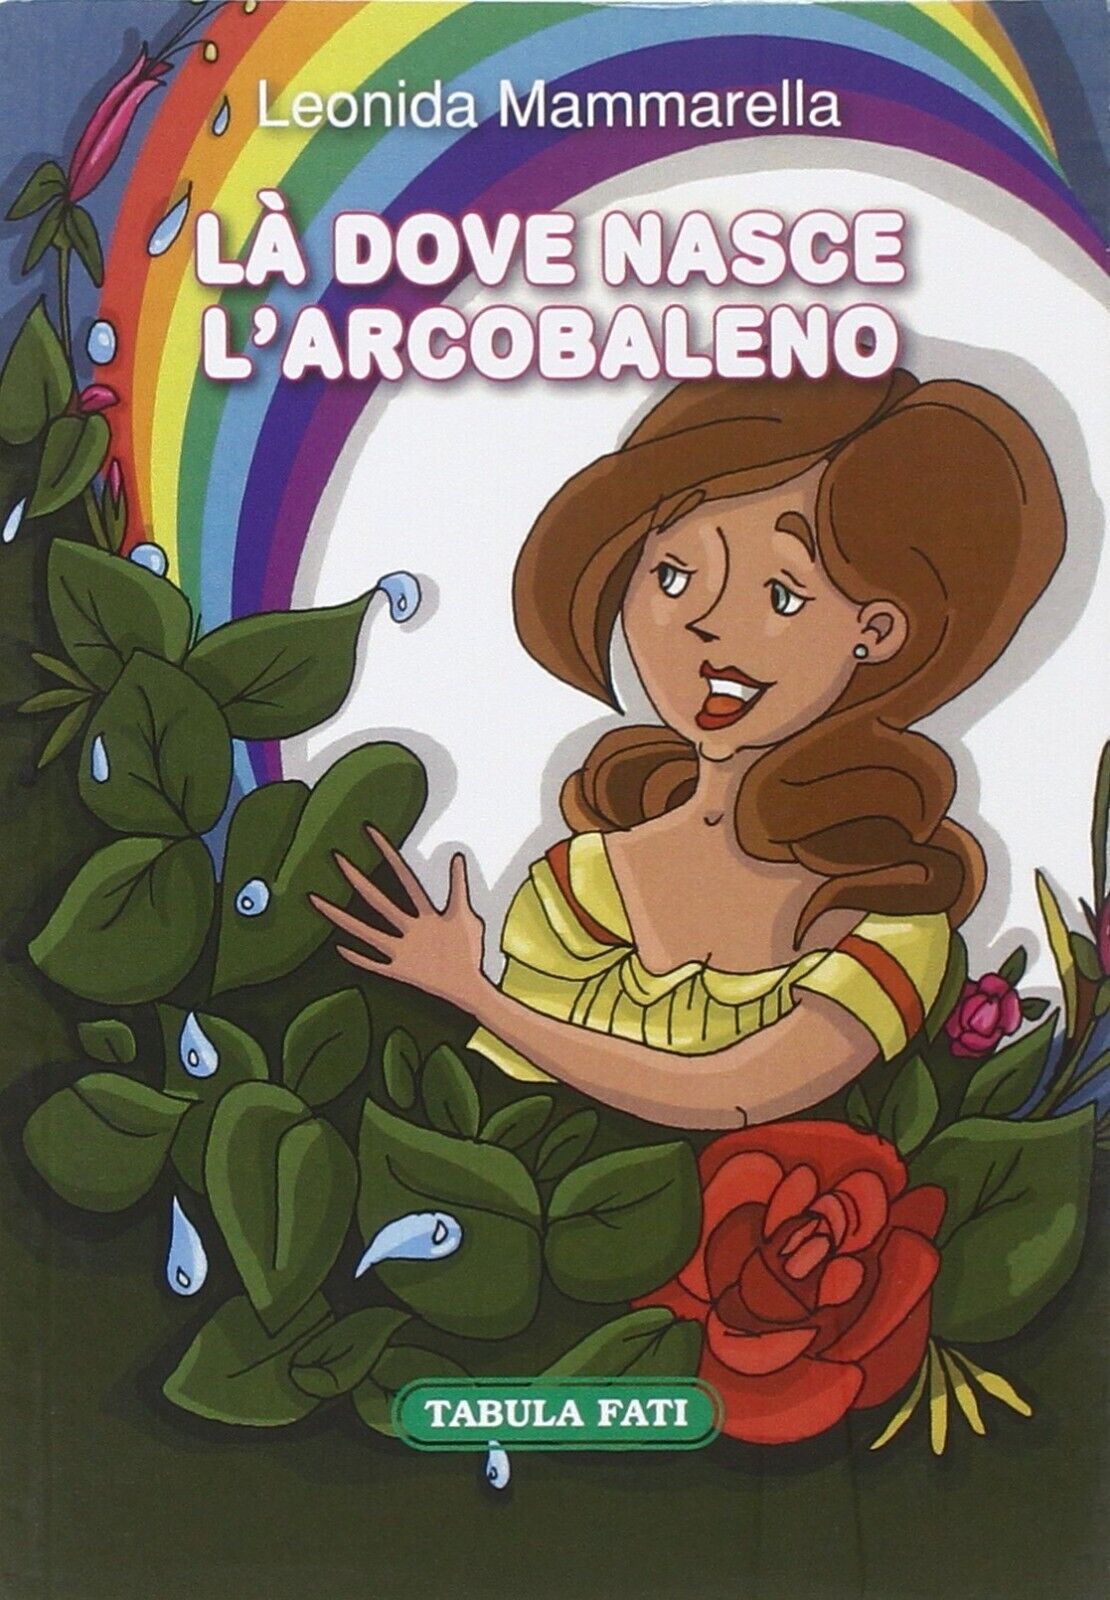  L? dove nasce L'arcobaleno di Leonida Mammarella, 2015, Tabula Fati libro usato